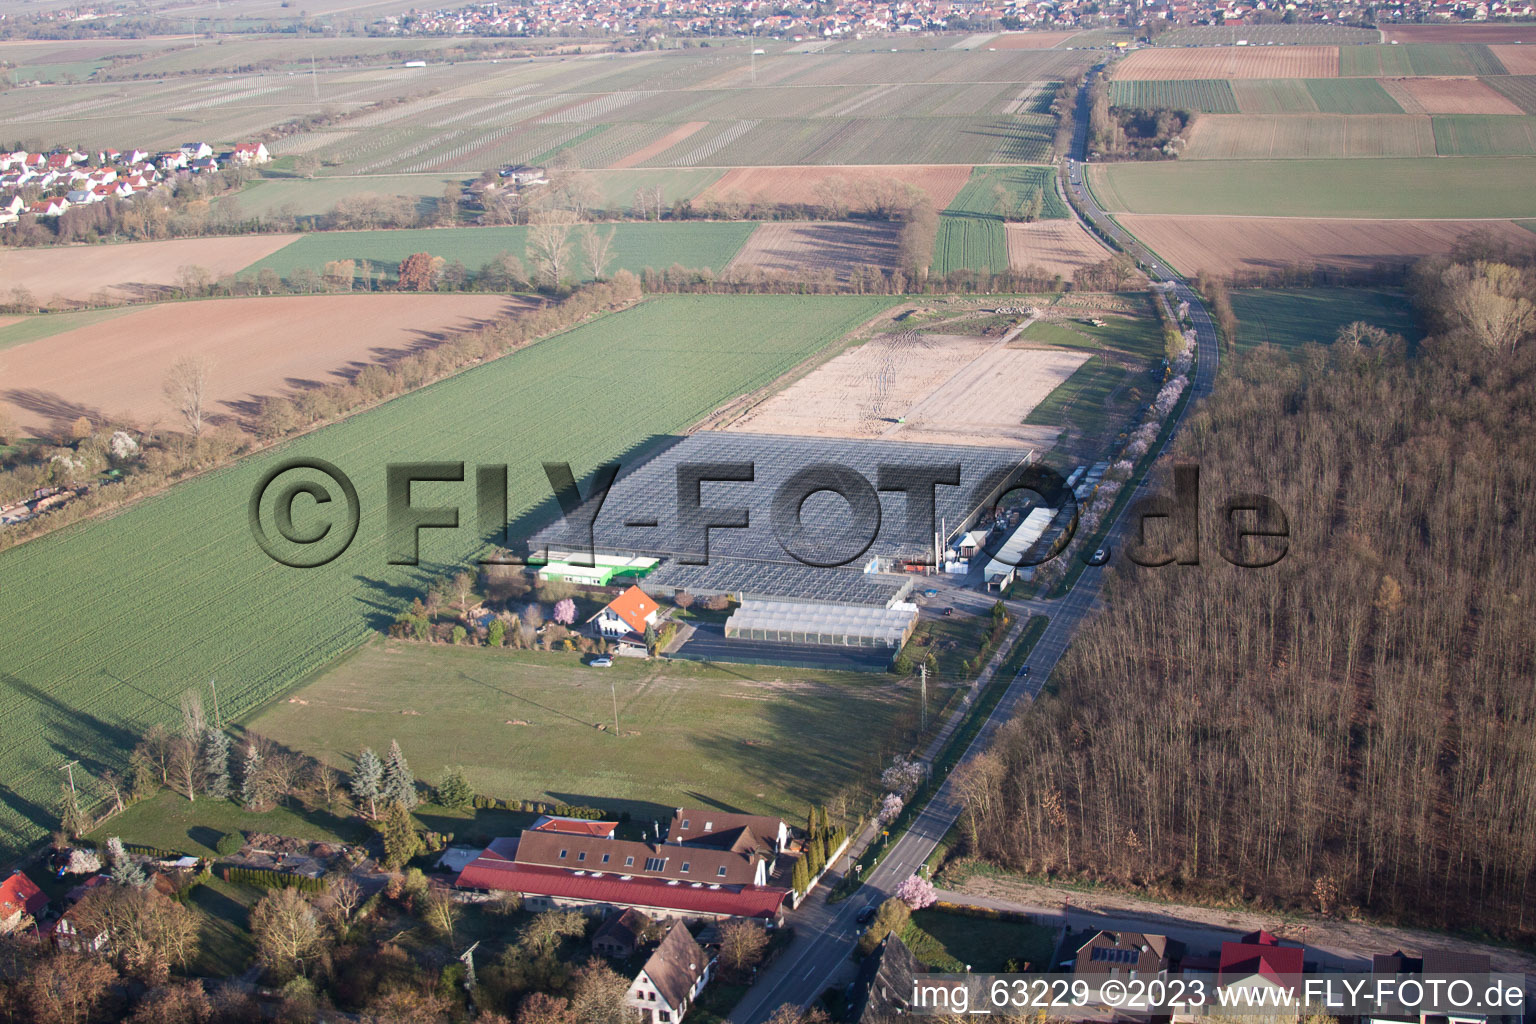 Essingen im Bundesland Rheinland-Pfalz, Deutschland aus der Luft betrachtet